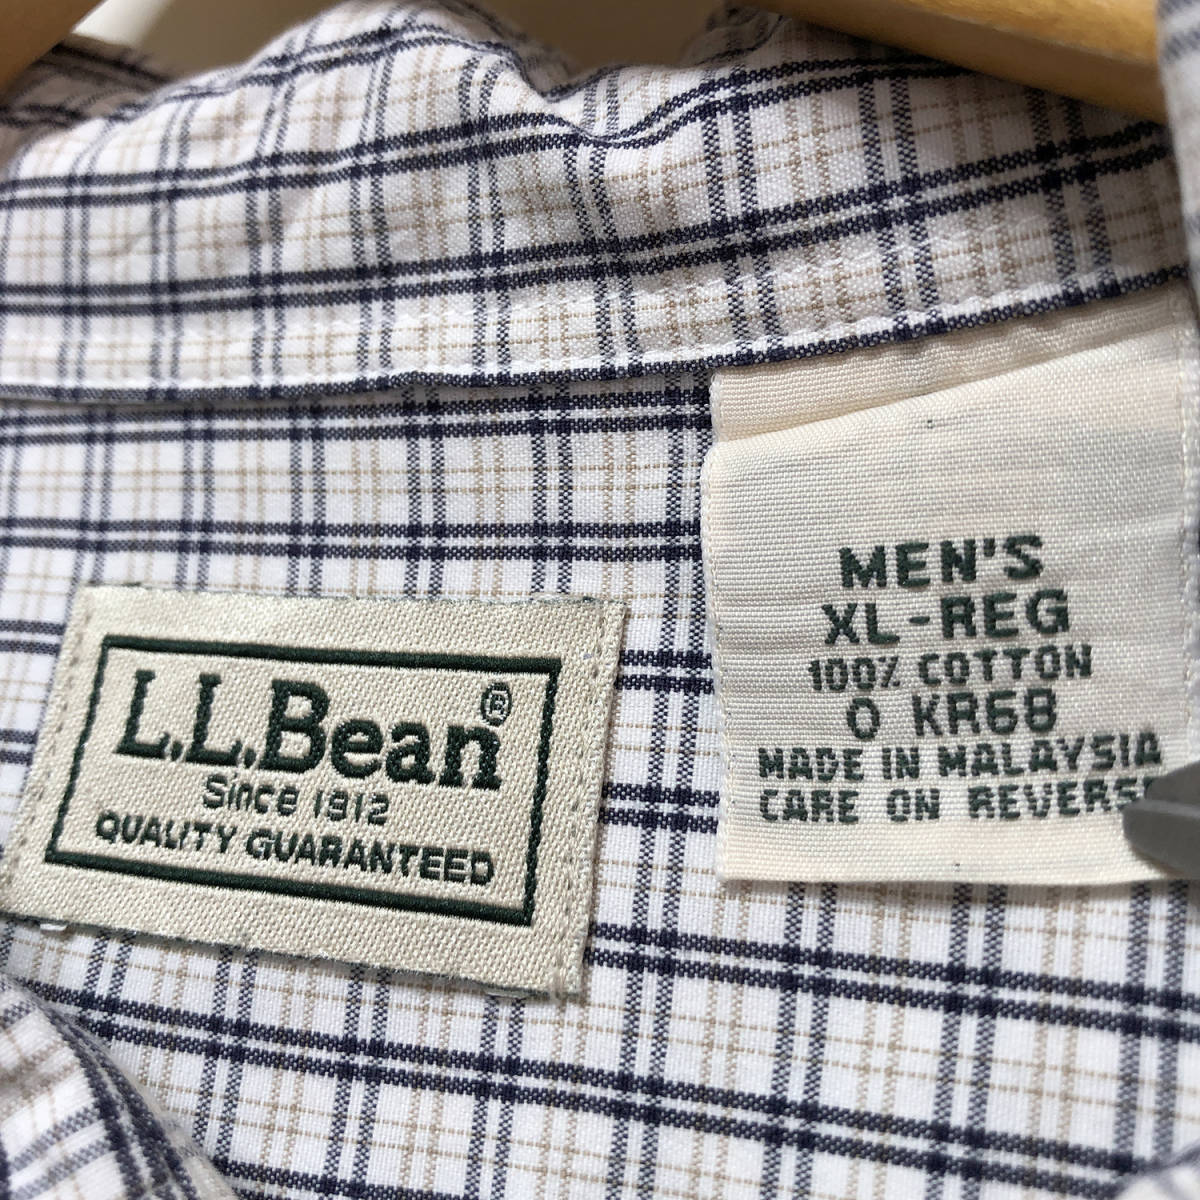 USA古着 L.L.Bean コットン チェック柄 BDシャツ ボタンダウン 長袖シャツ メンズXL 大きいサイズ LLビーン エルエルビーン 古着 BG0359